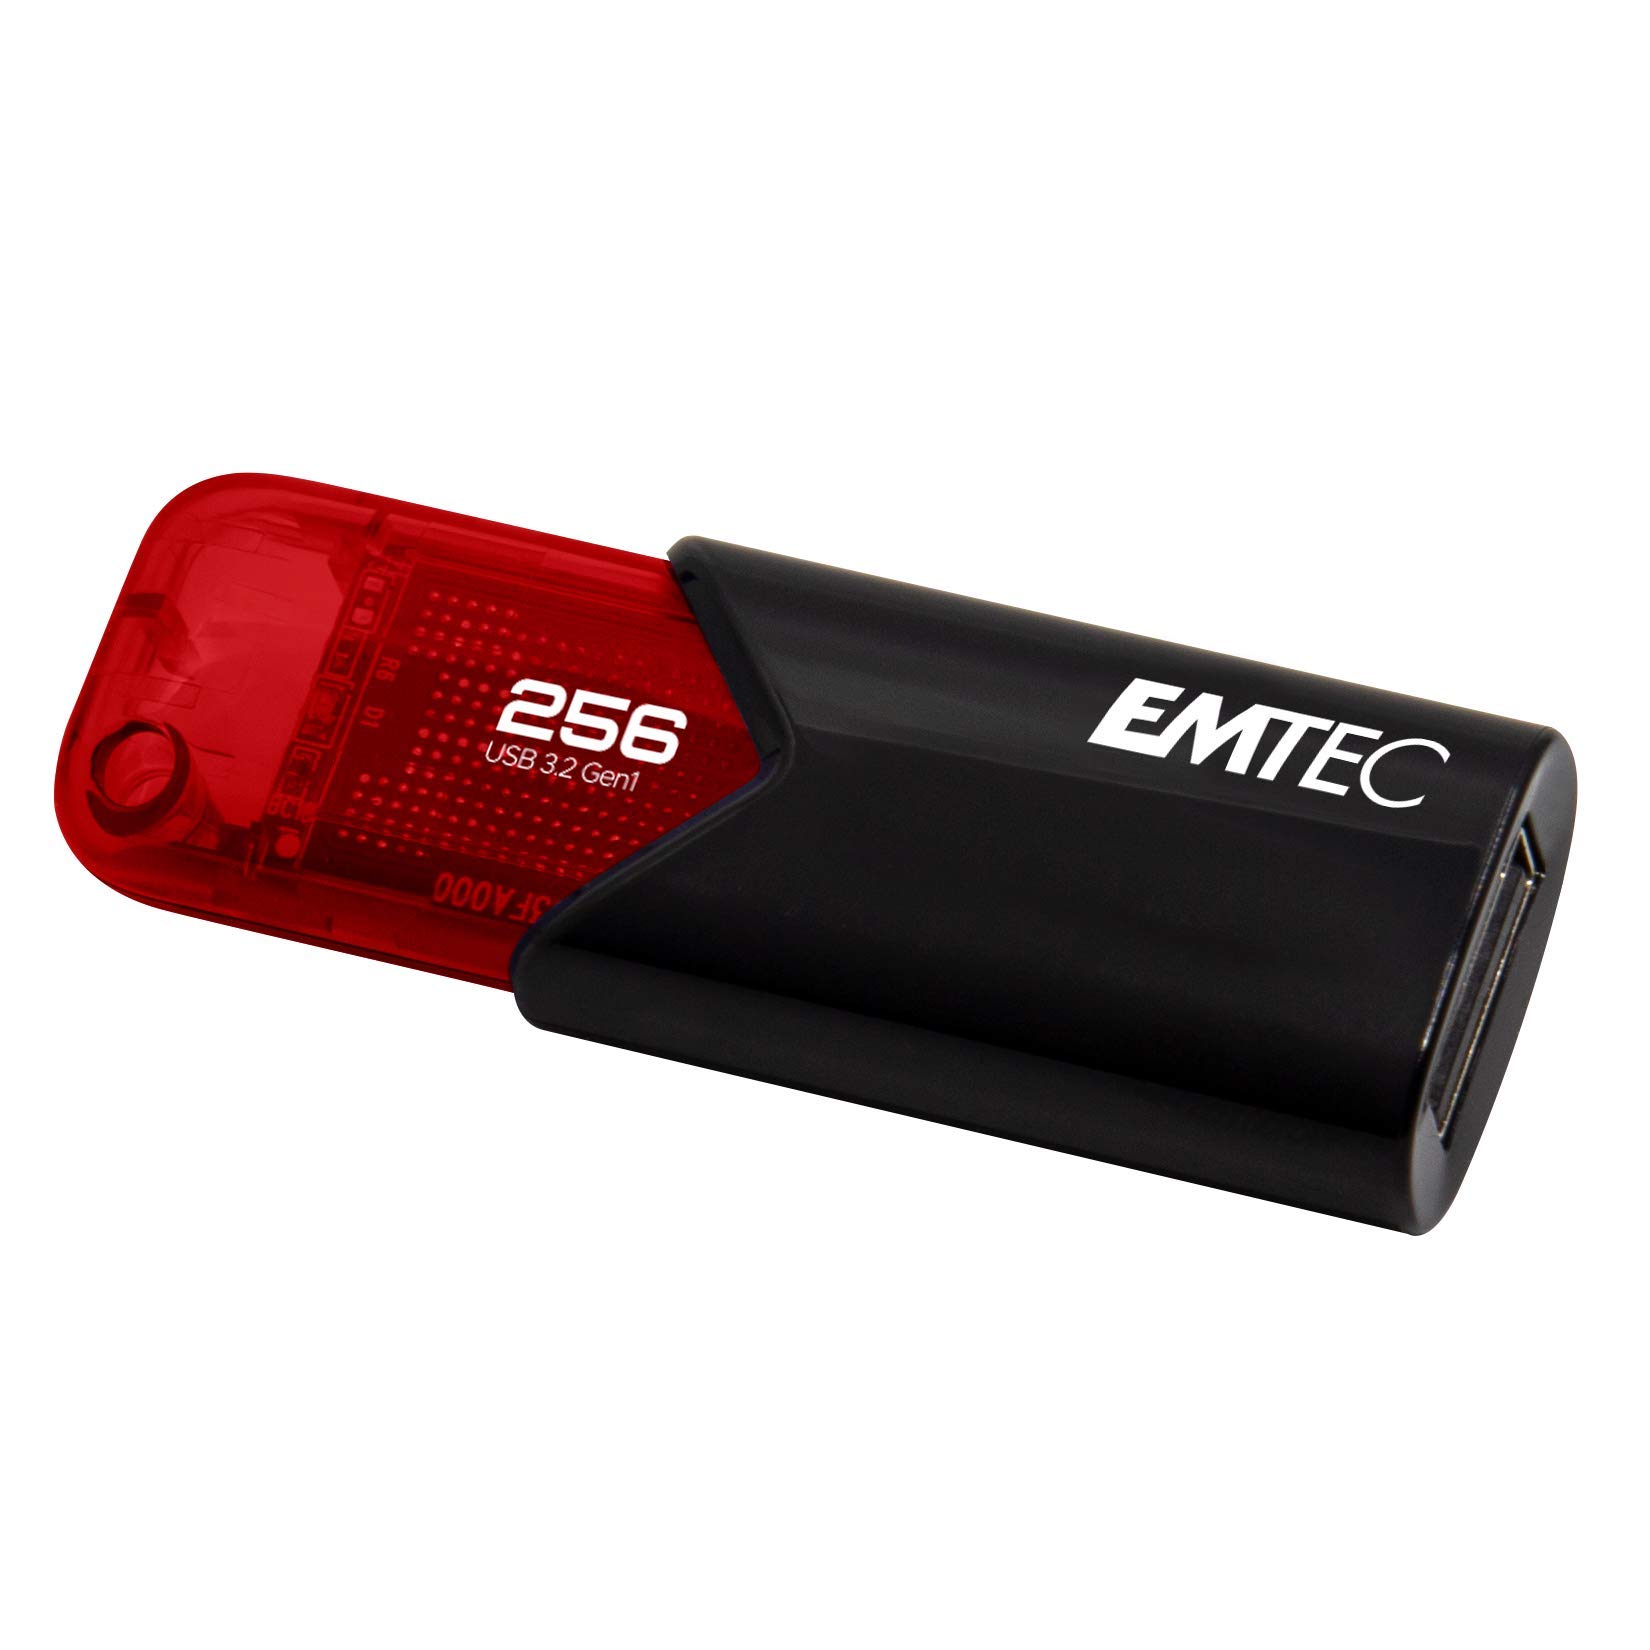 Emtec - Memoria USB B110 USB 3.2 ClickEasy - rosso - ECMMD256GB113 - 256 GB